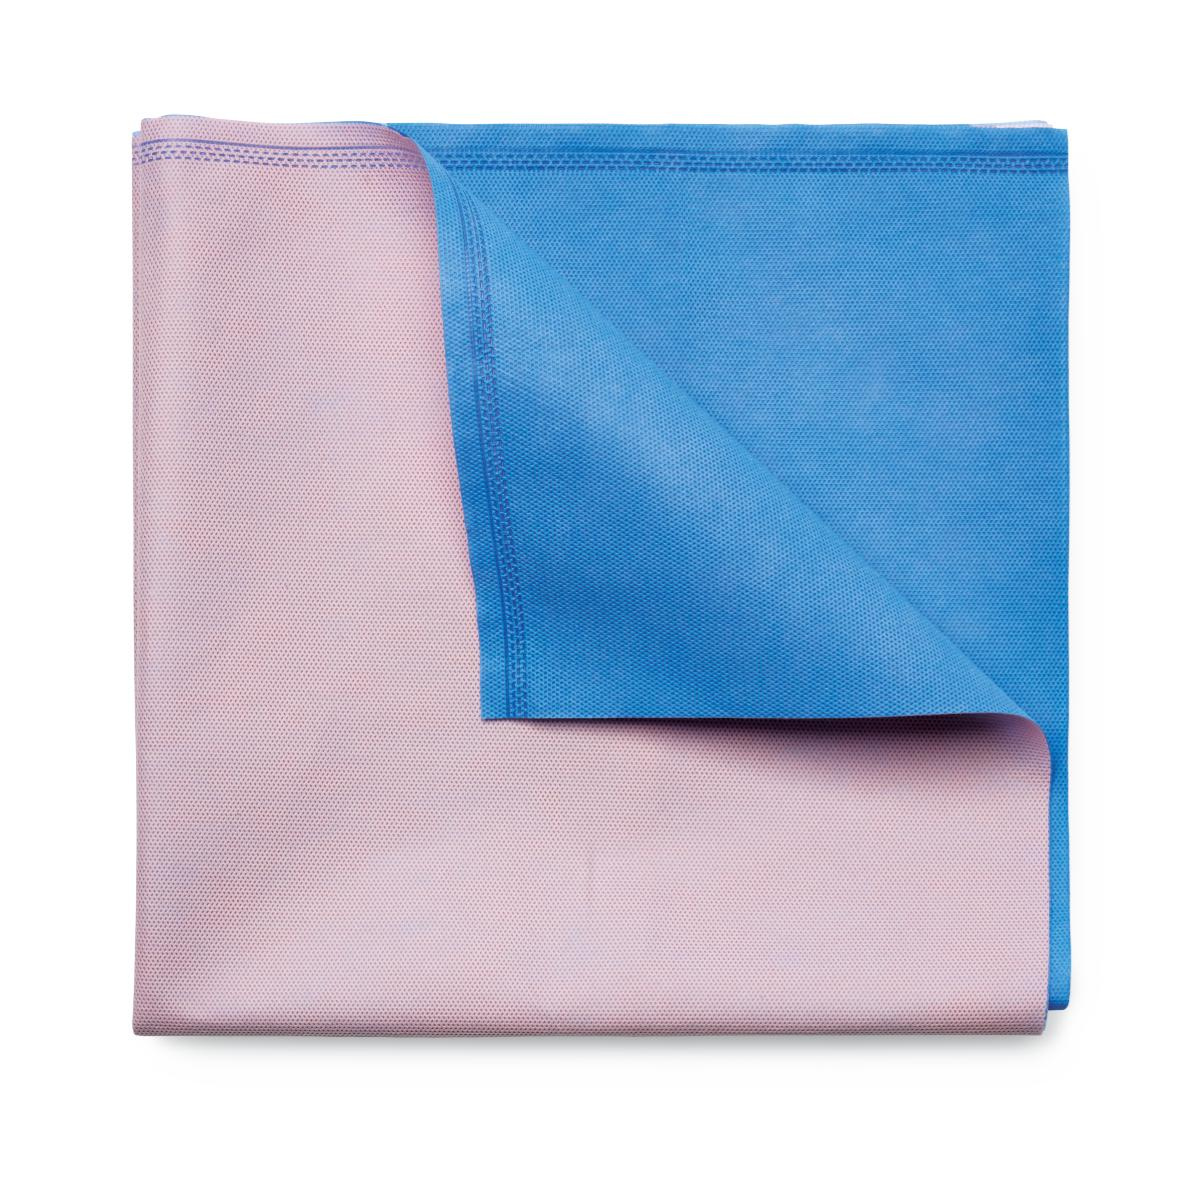 Gemini Sterilisation Wrap Dual Colour Pink/Blue 47gsm 91x91cm image 0